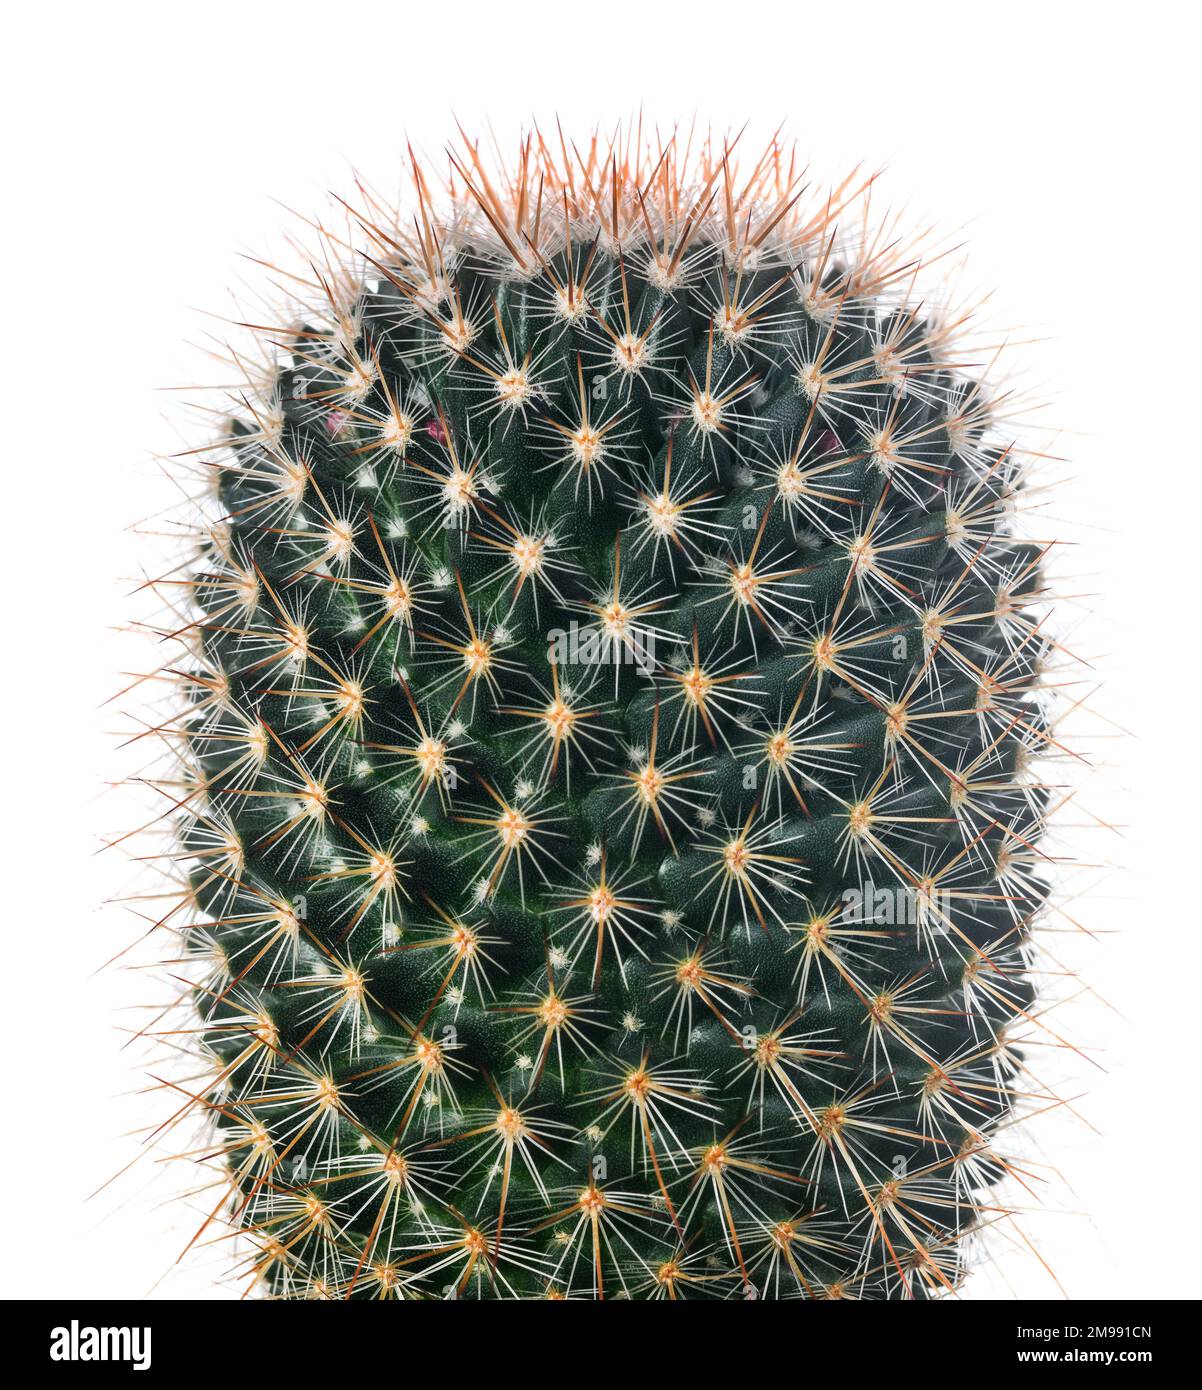 Impianto di Cactus isolato su sfondo bianco Foto Stock